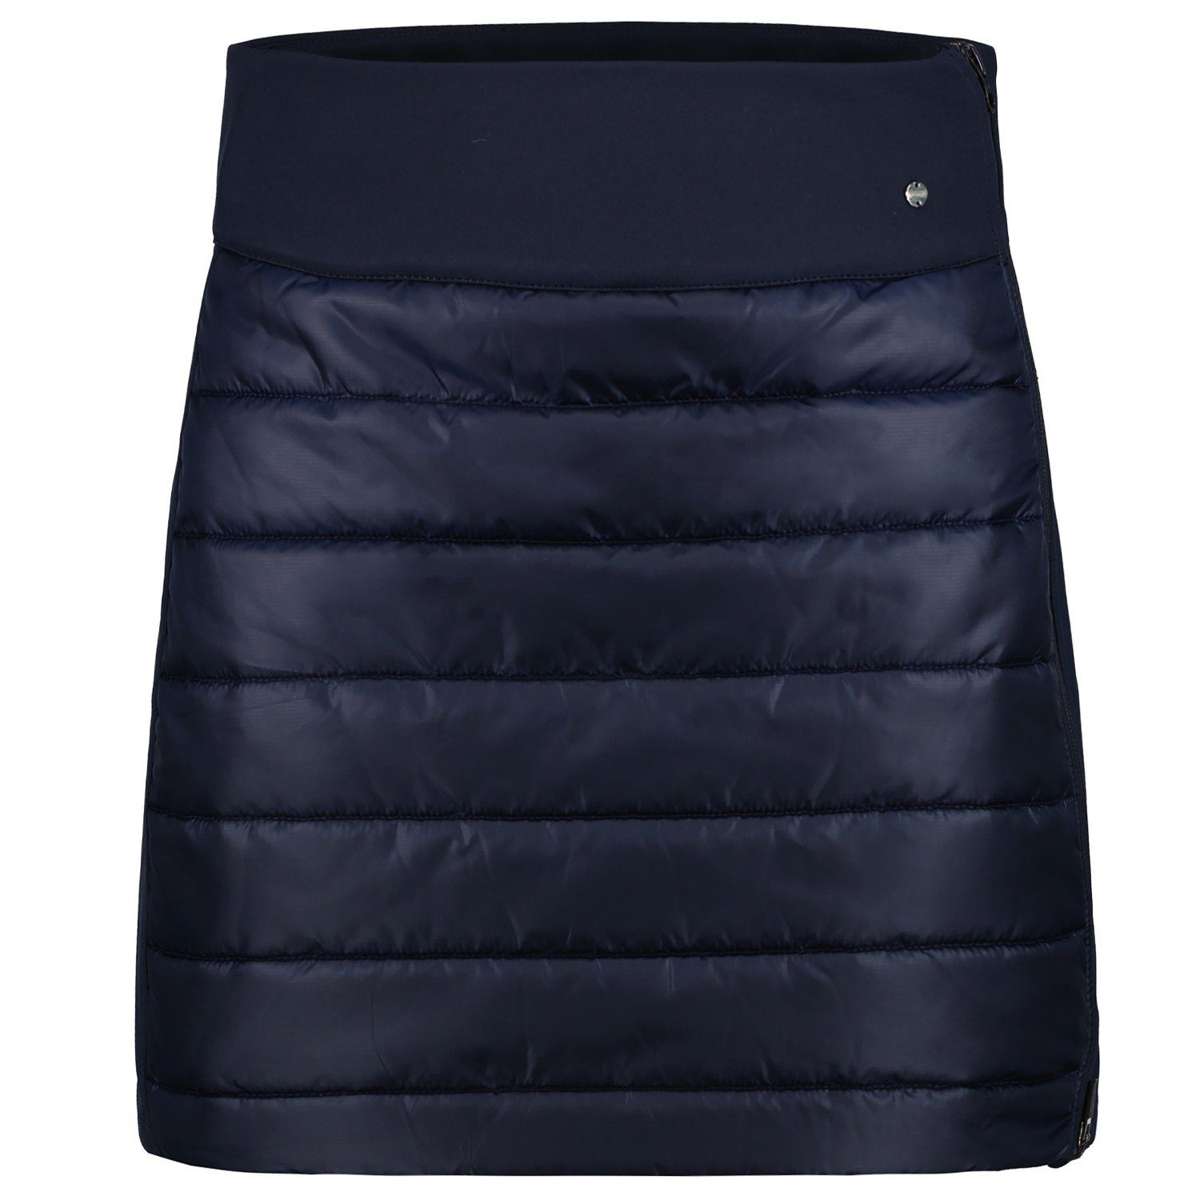 Тканая юбка уличная юбка Ennis женская легкая и водоотталкивающая (0 шт.) водоотталкивающая, двусторонняя